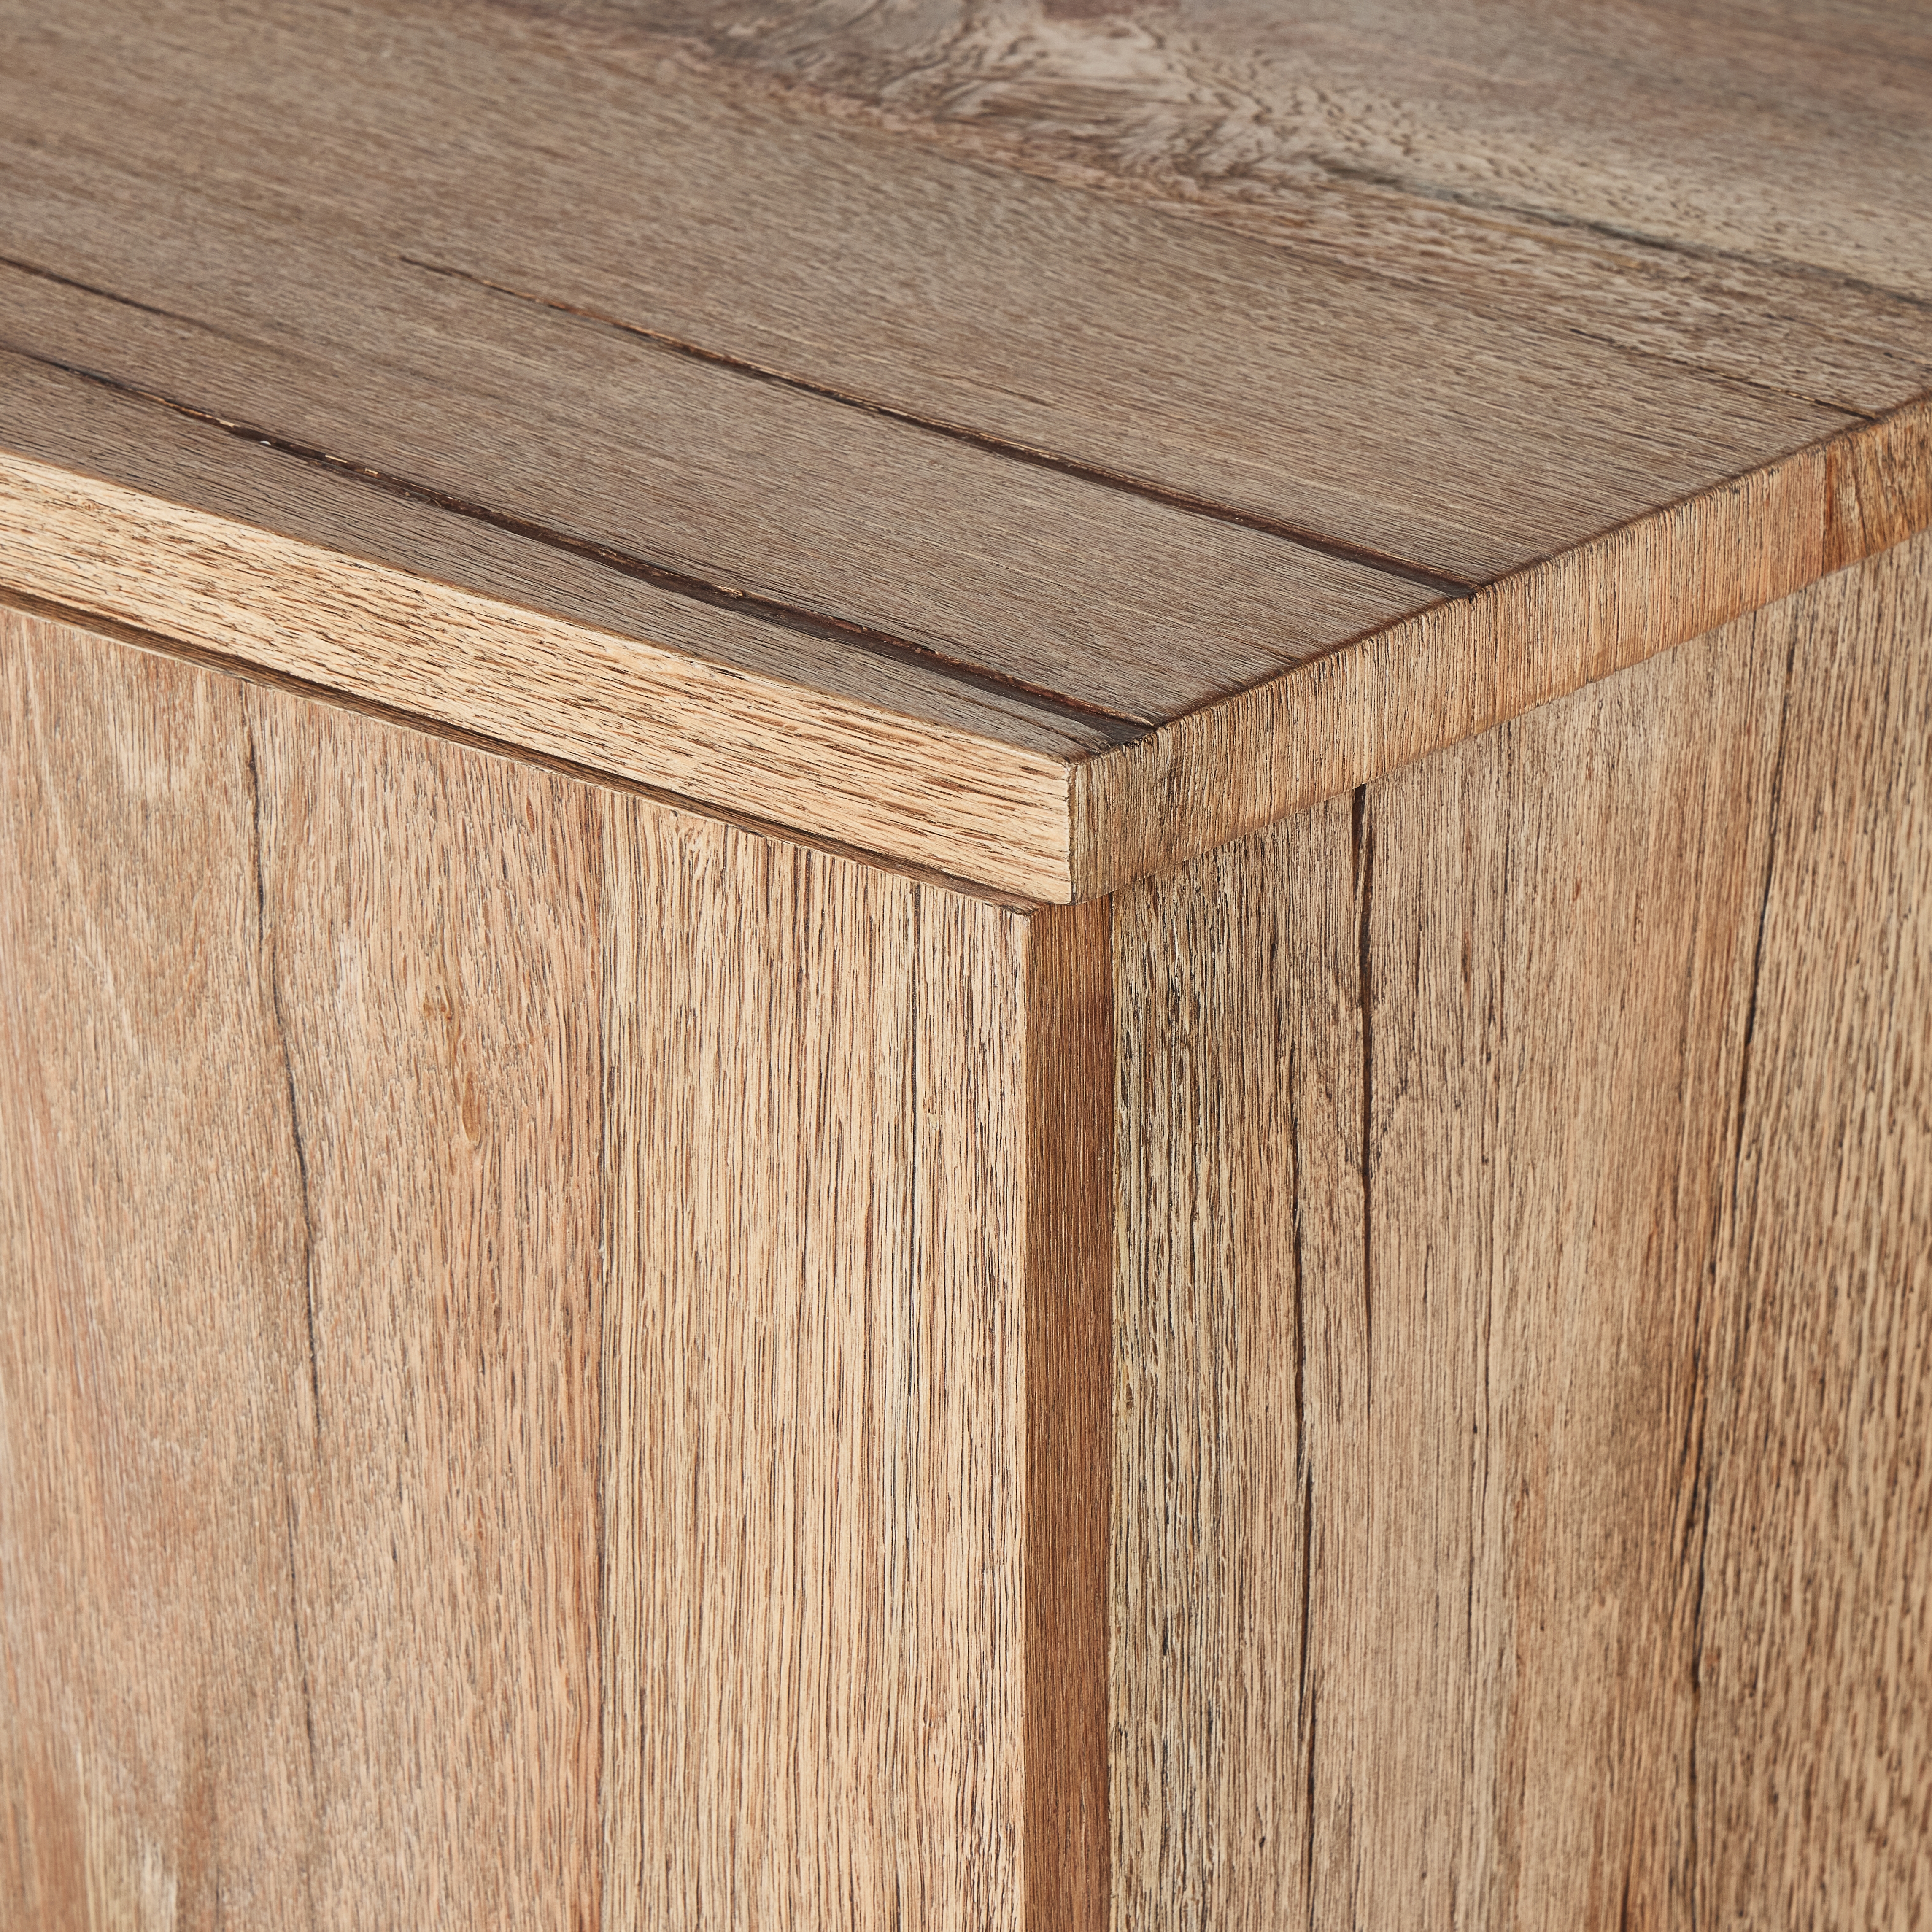 Brinton Sideboard-Rustic Oak Veneer - Image 2